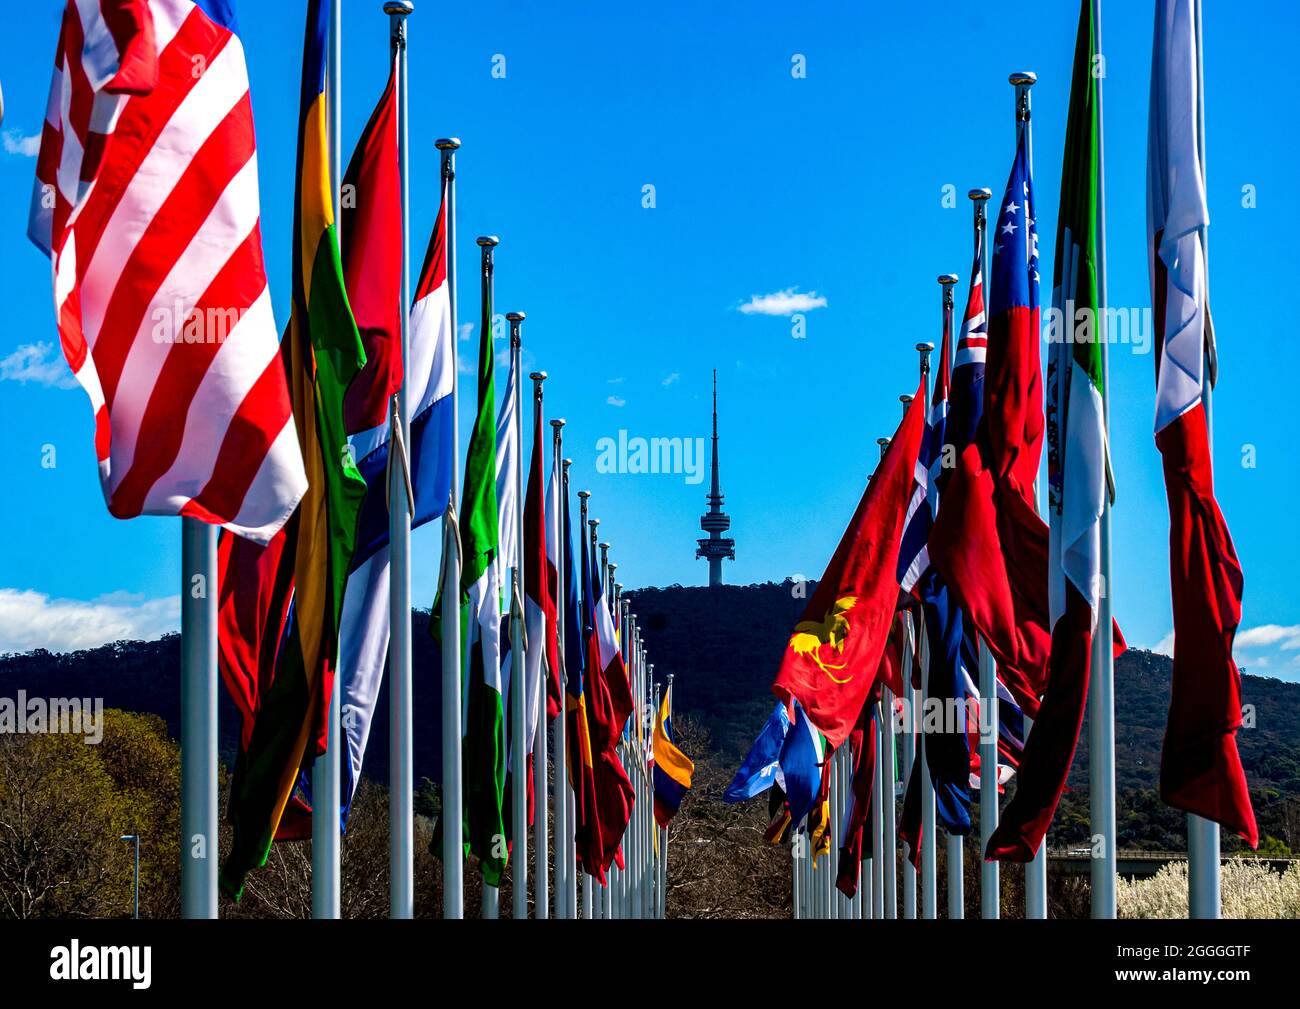 Bandiere internazionali costeggiano il lago Burley Griffin, una per ogni nazione con una missione diplomatica a Canberra, capitale nazionale australiana Foto Stock